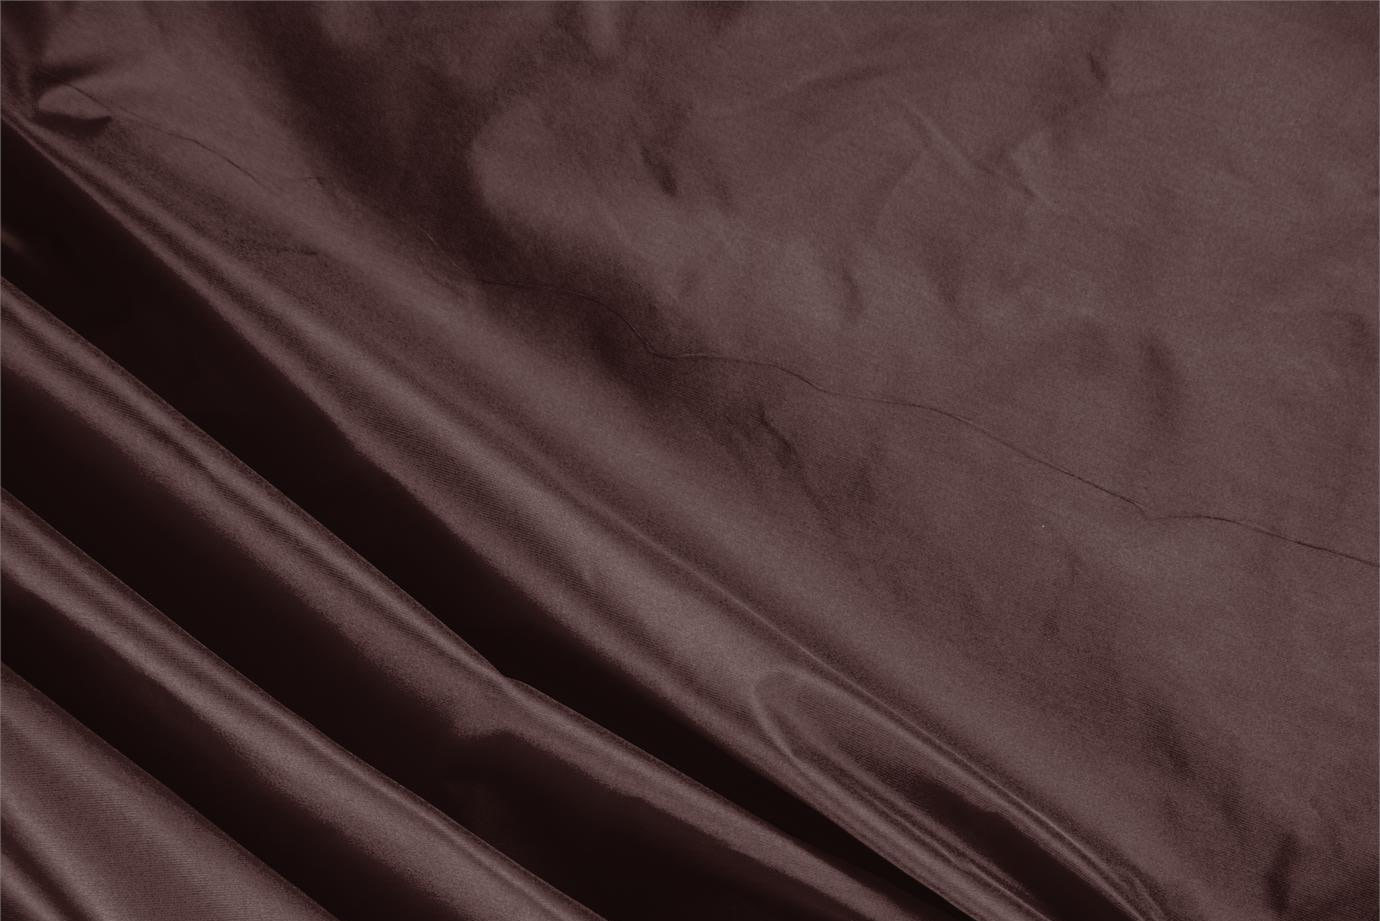 Tissu Couture Taffetas Marron chocolat en Soie UN000284